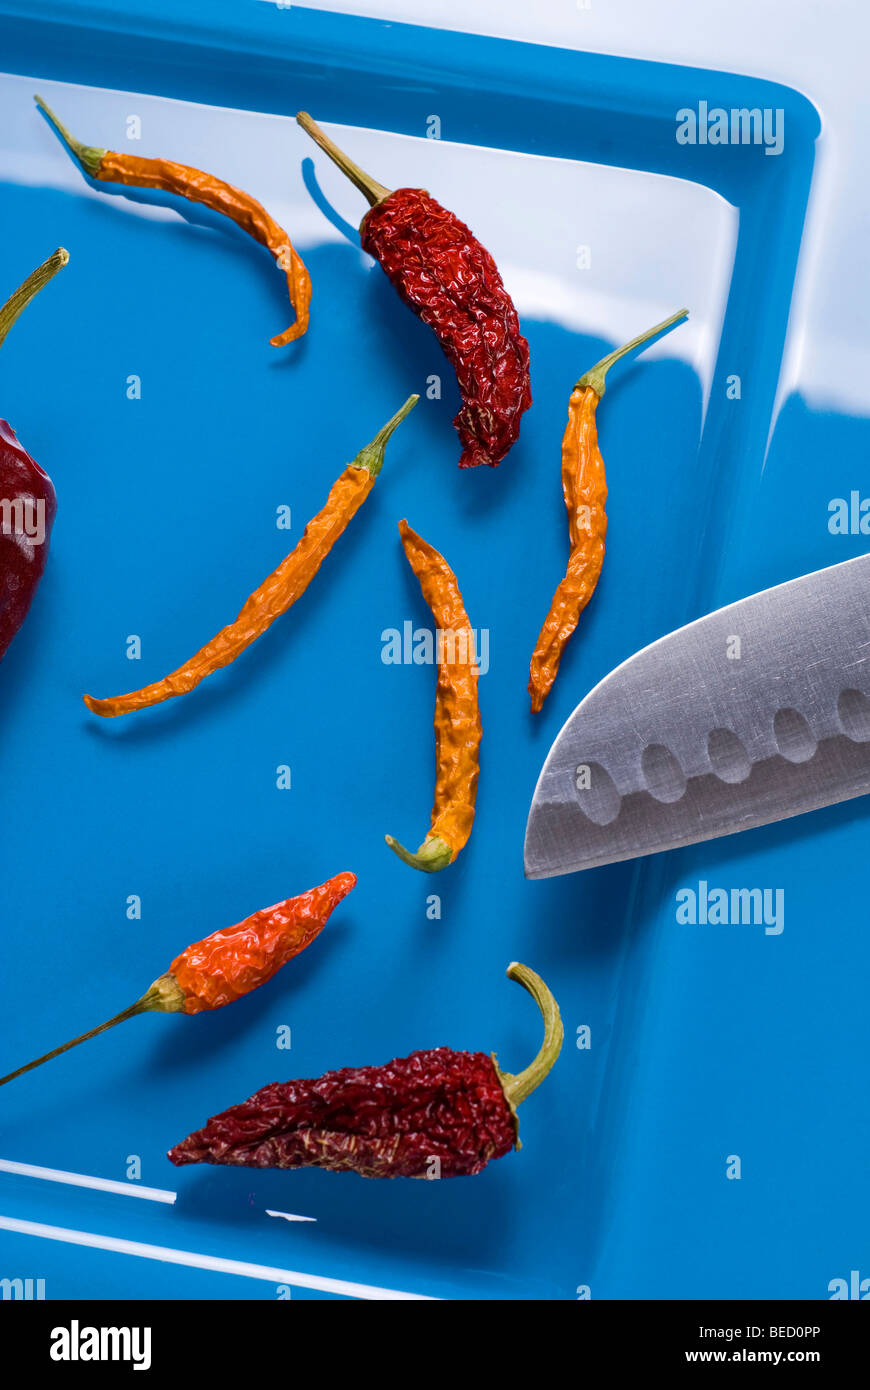 Peperonccini secchi, tagliente coltello giapponese, piastra blu Foto Stock